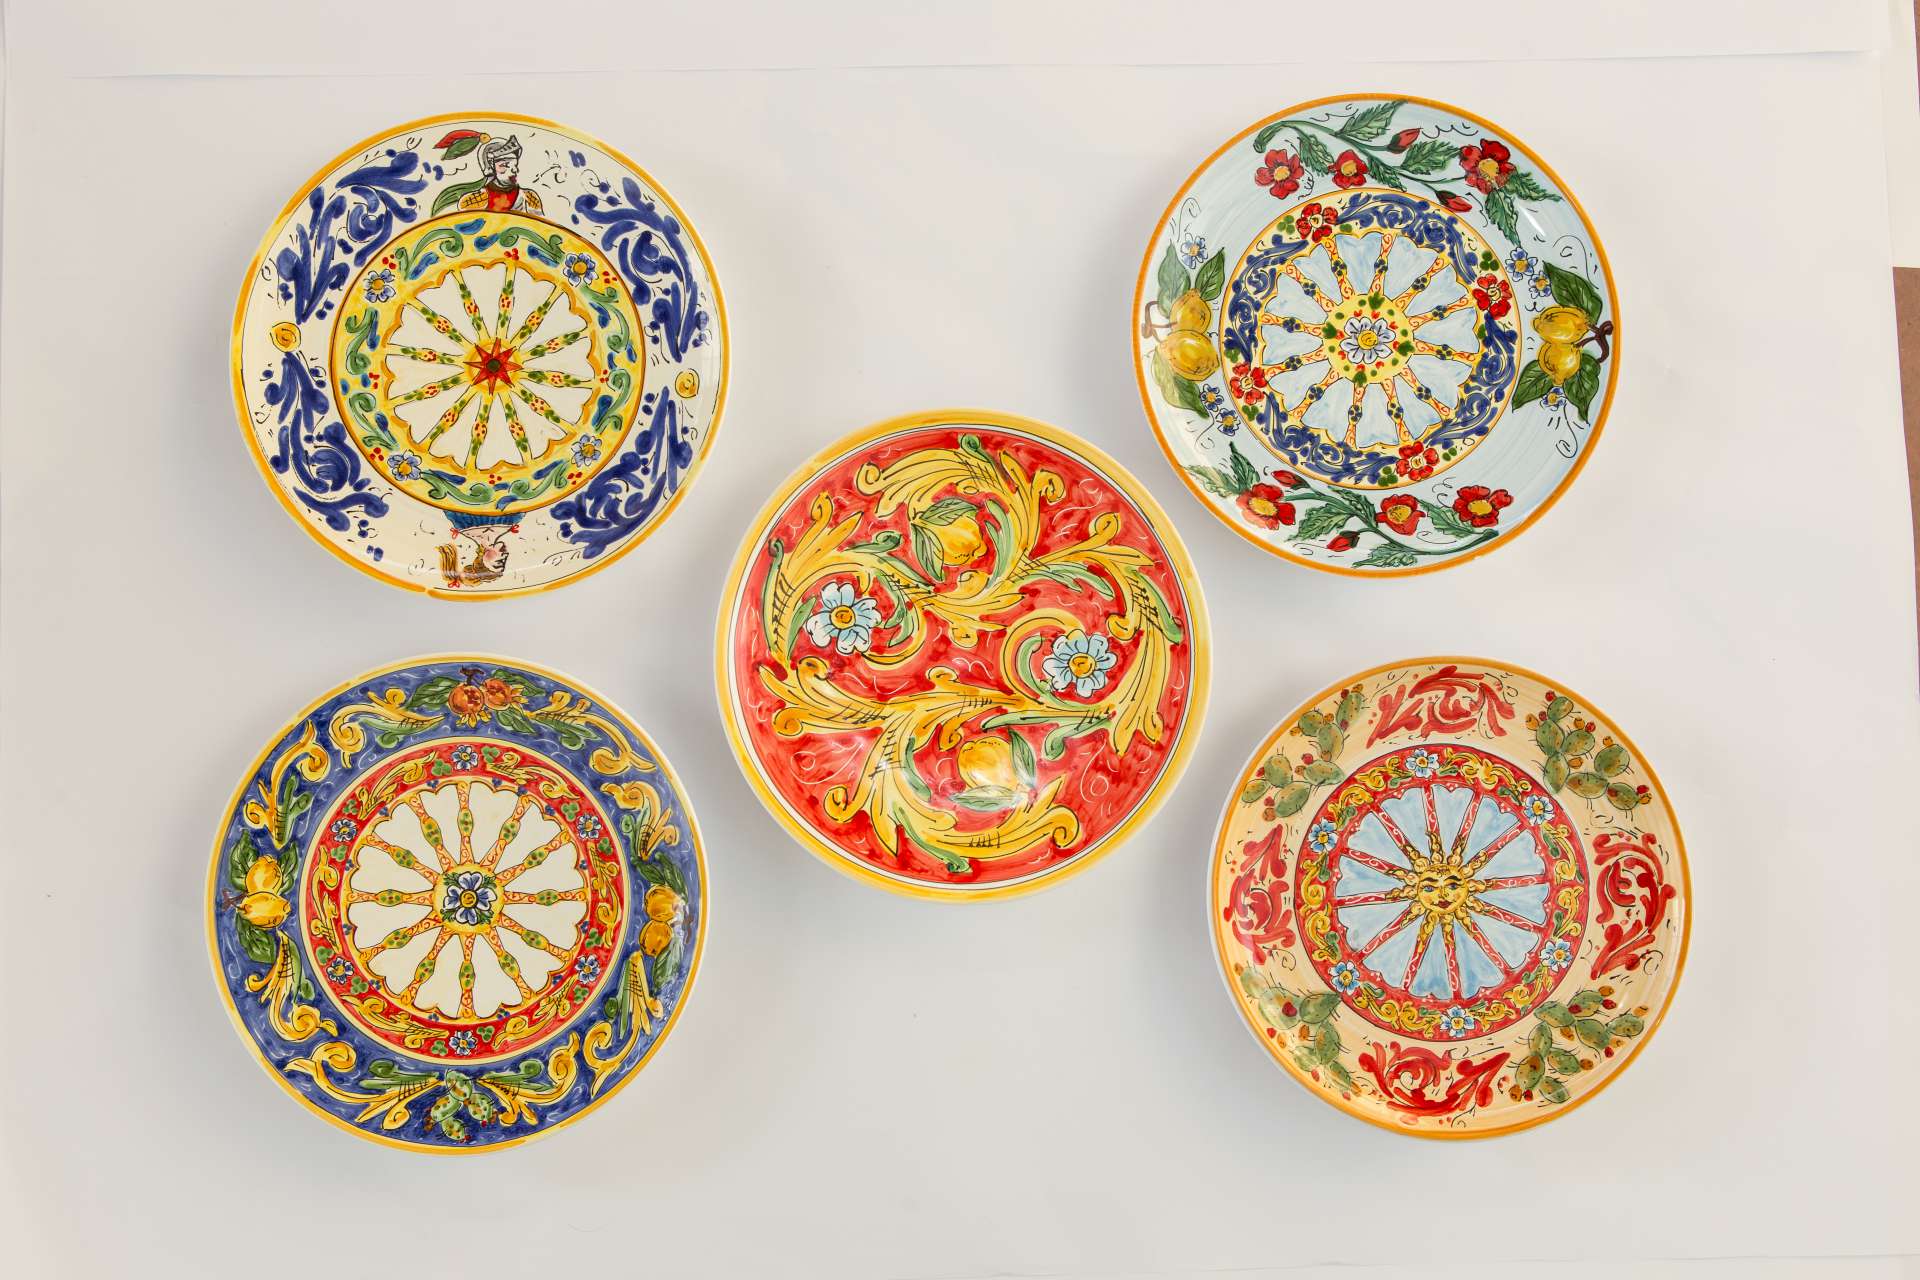 Pensare ai Regali - I piatti artistici delle Ceramiche Siciliane Ruggeri -  Scomunicando